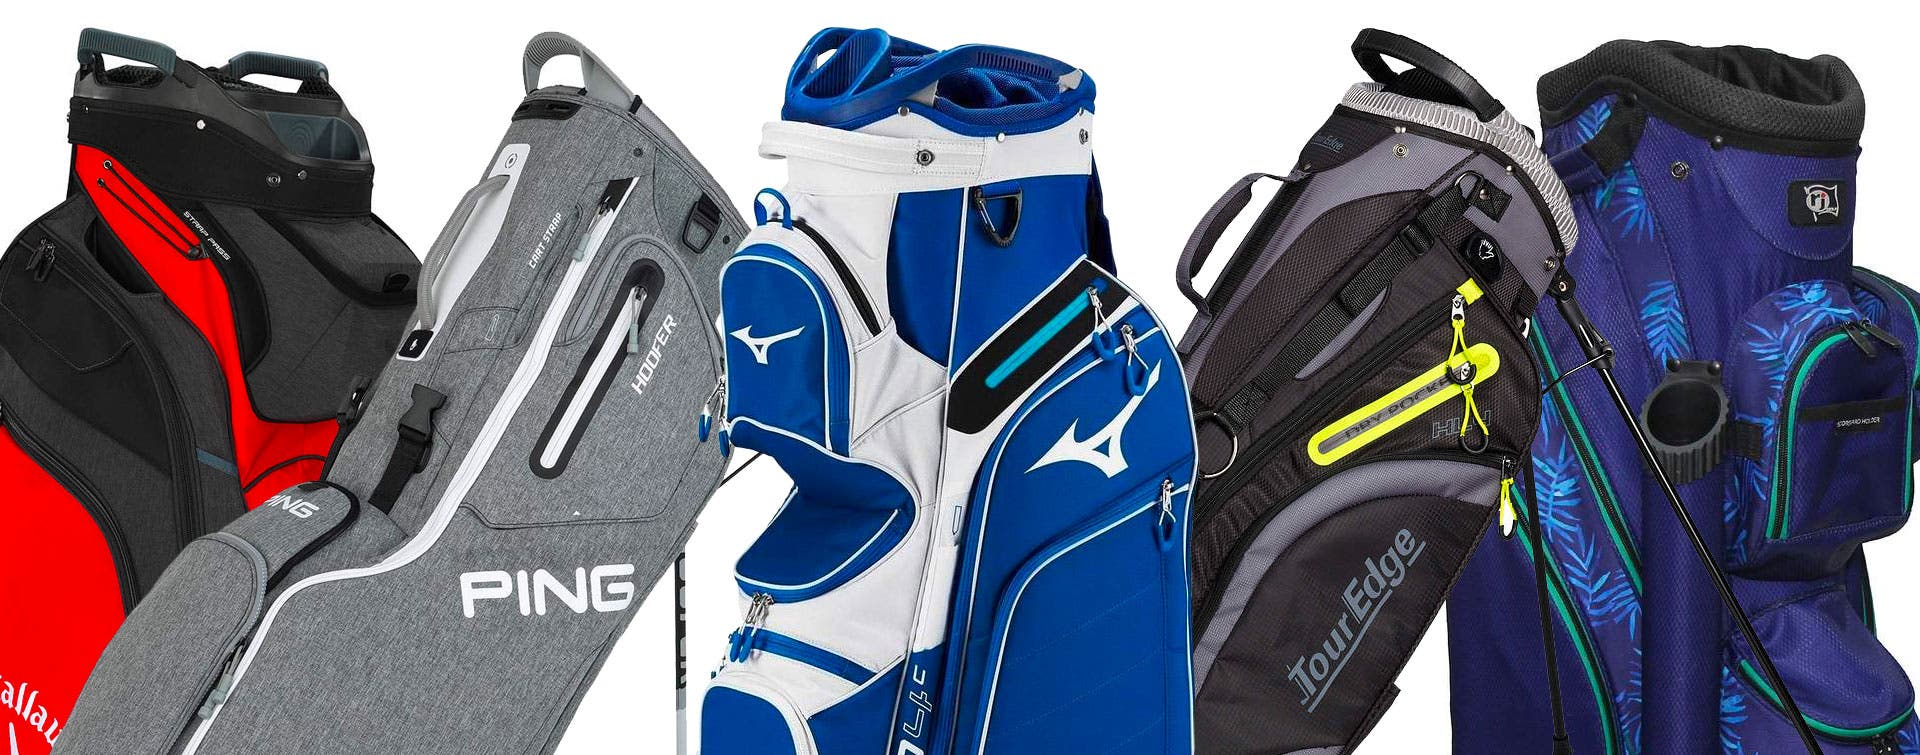 Golf Bag Specials Banner Image